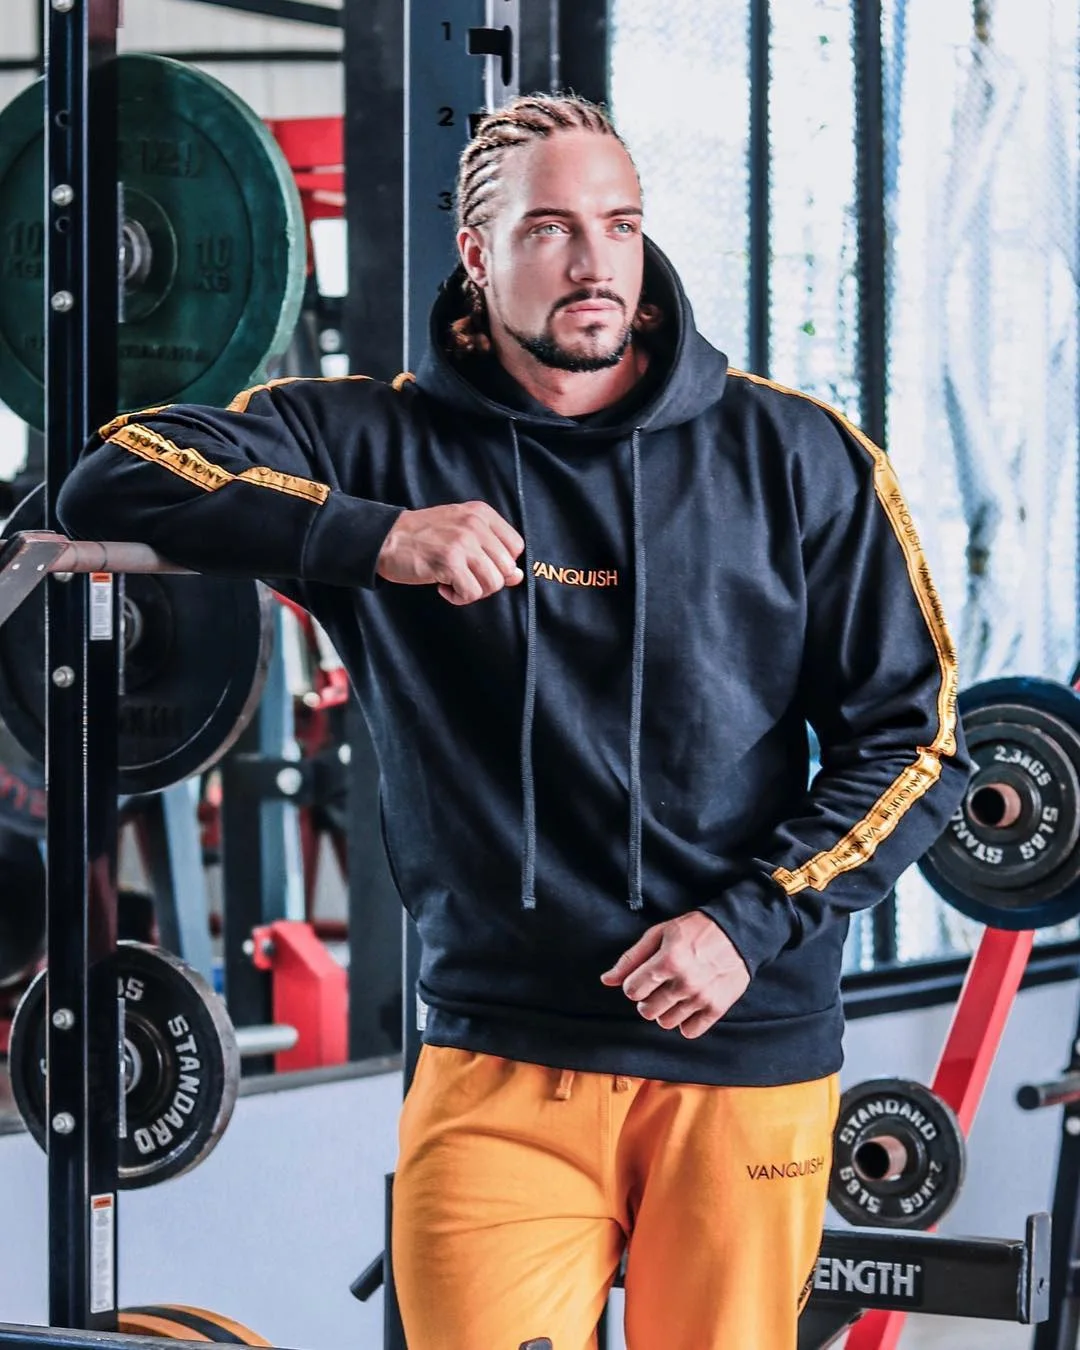 Мускул д-р Европа и Америка Brothers стиль популярный бренд гимнастические брюки для мужчин с капюшоном спортивный свитер комплект из двух предметов